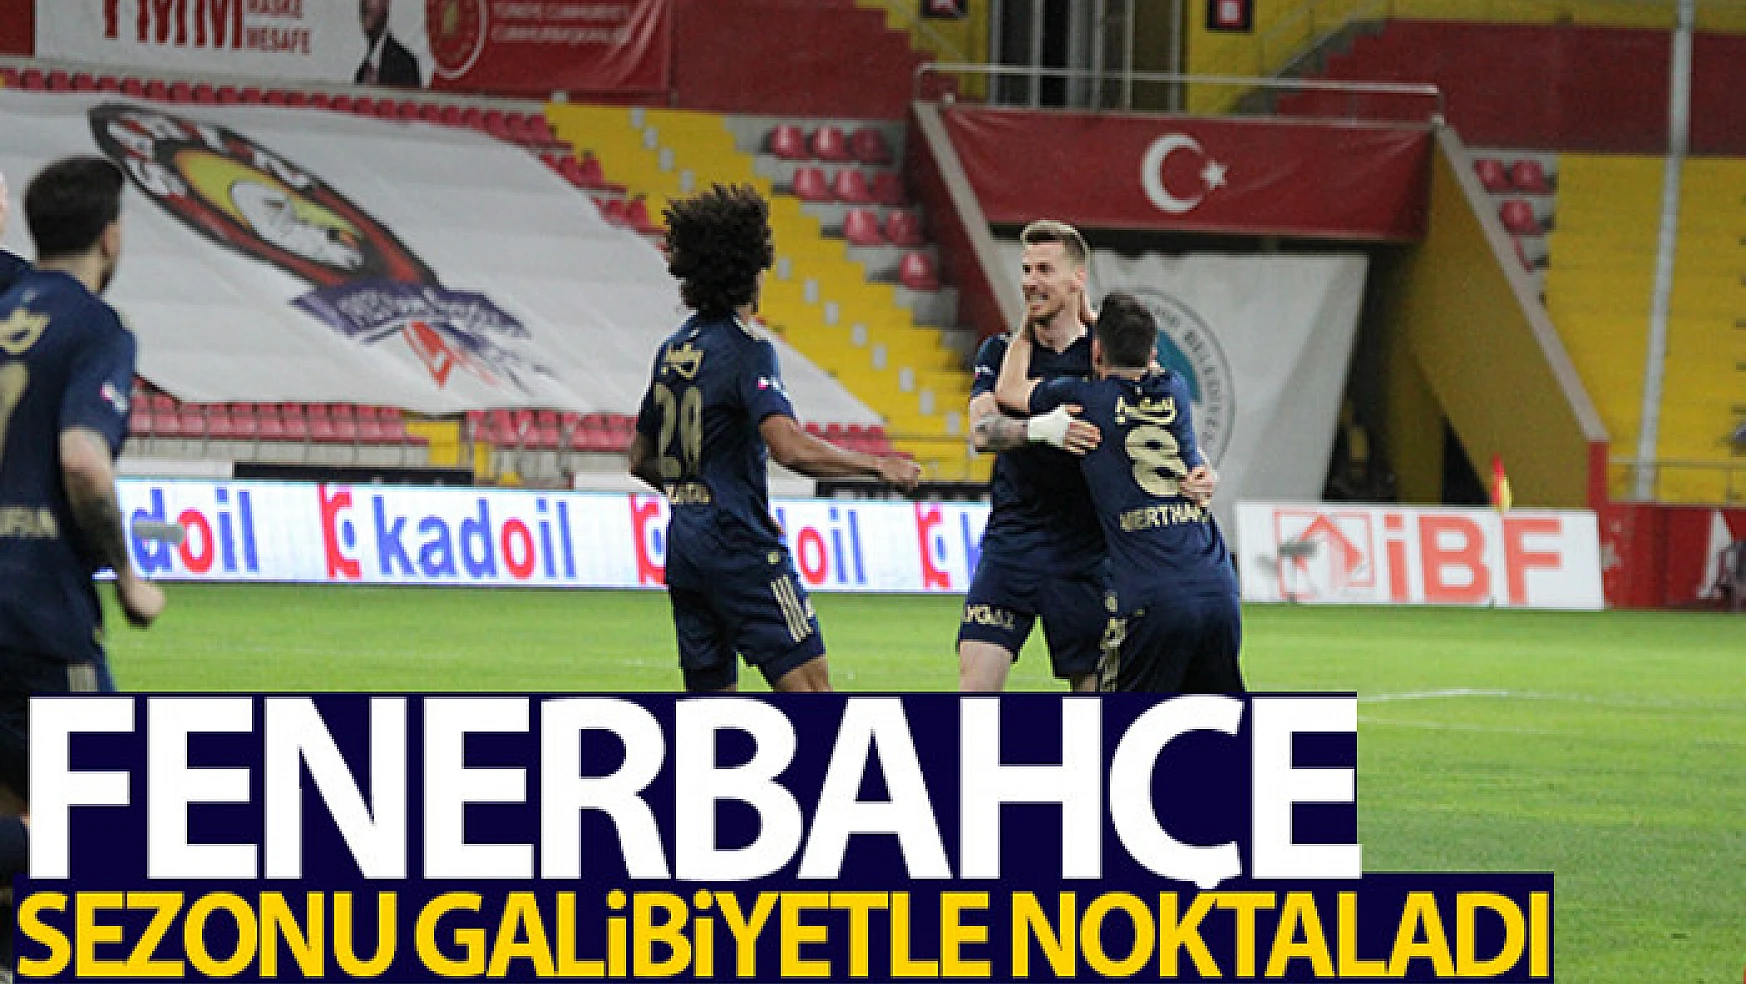 Fenerbahçe sezonu galibiyetle noktaladı